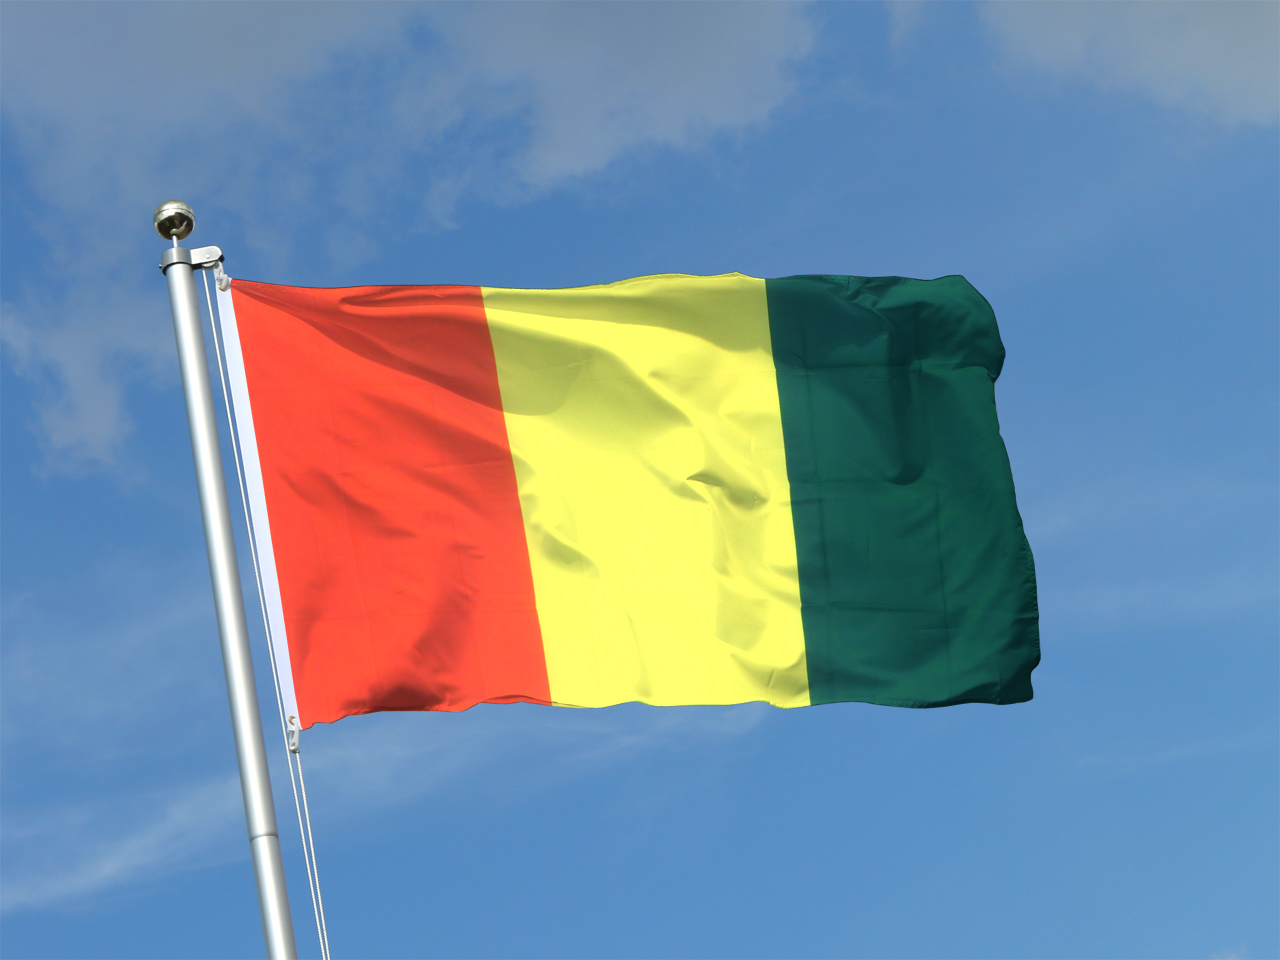 GUINEA KOLONIALFLAGGE Fahne Fahnen Flaggen DEUTSCH